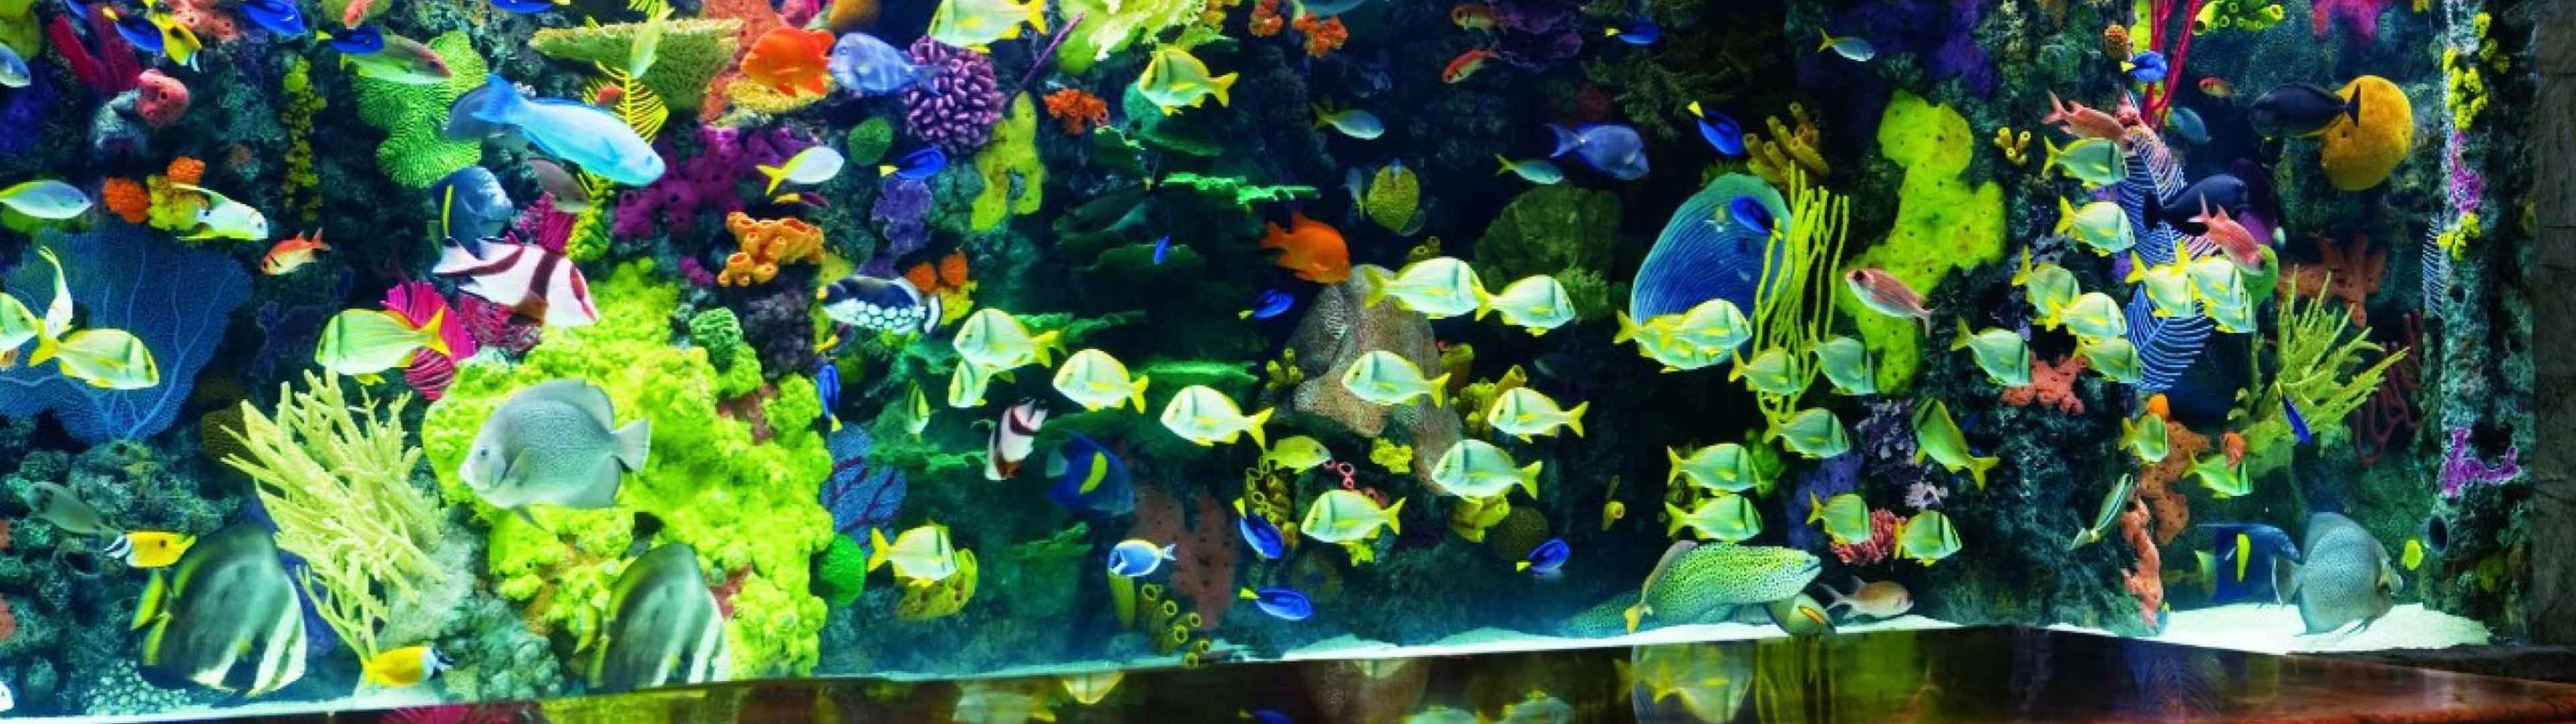 Aquarium Las Vegas - The Mirage